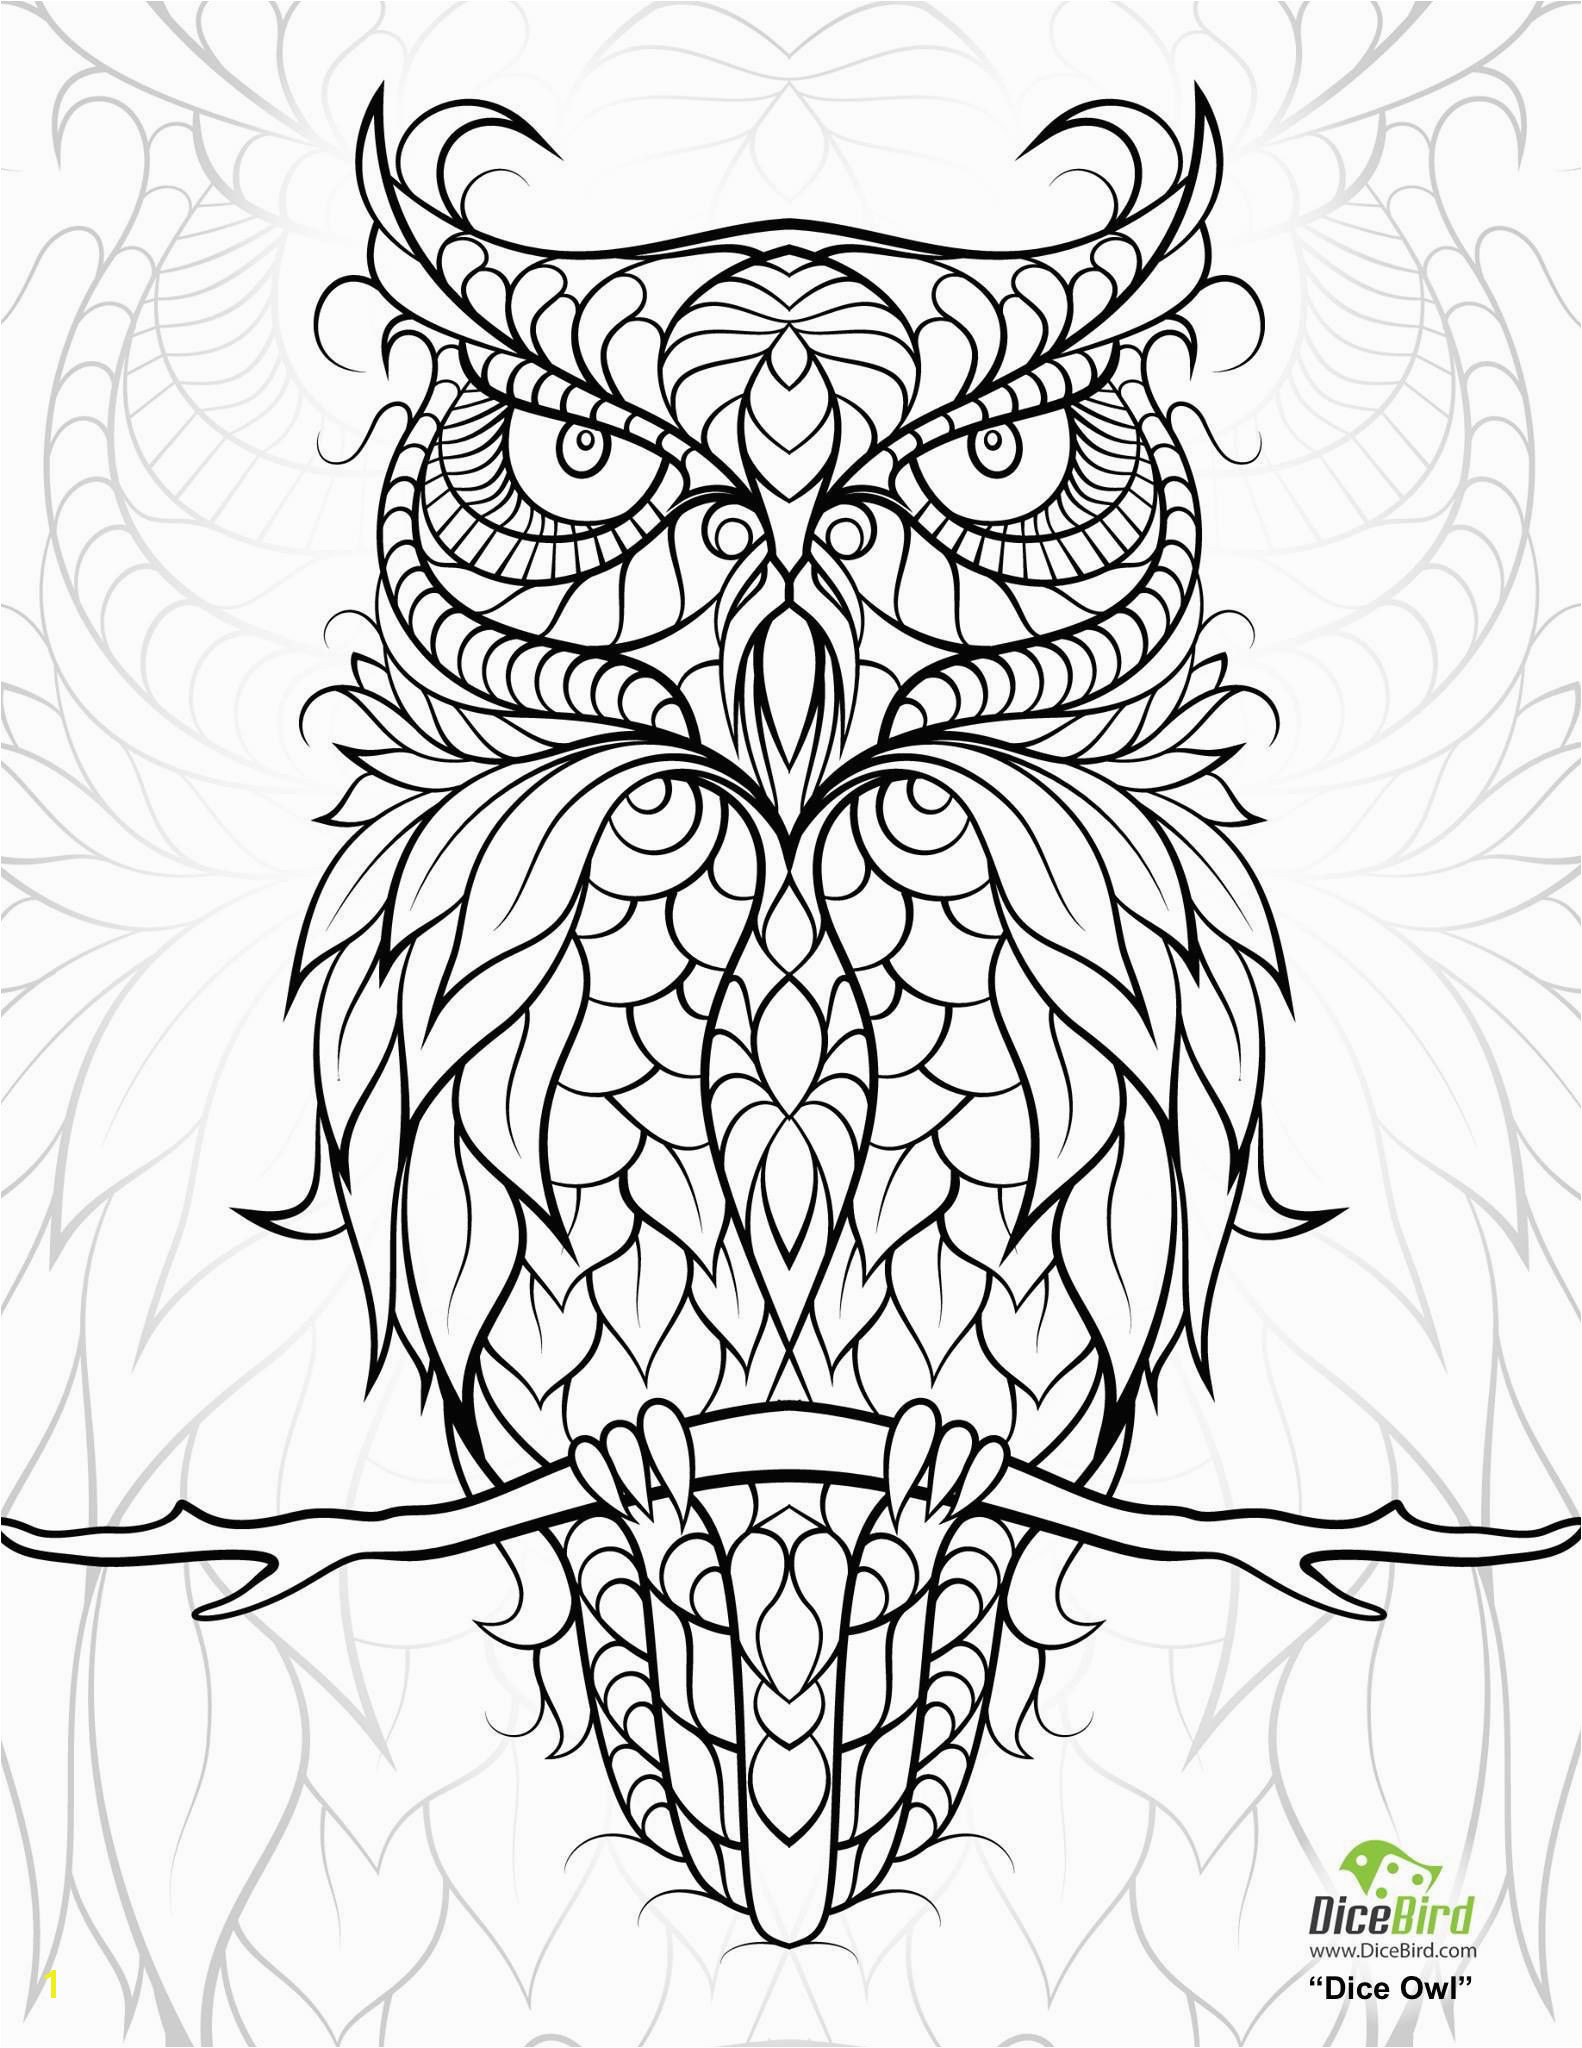 iColor "Owls" 15822048 More Free Coloring Pages Printable Adult